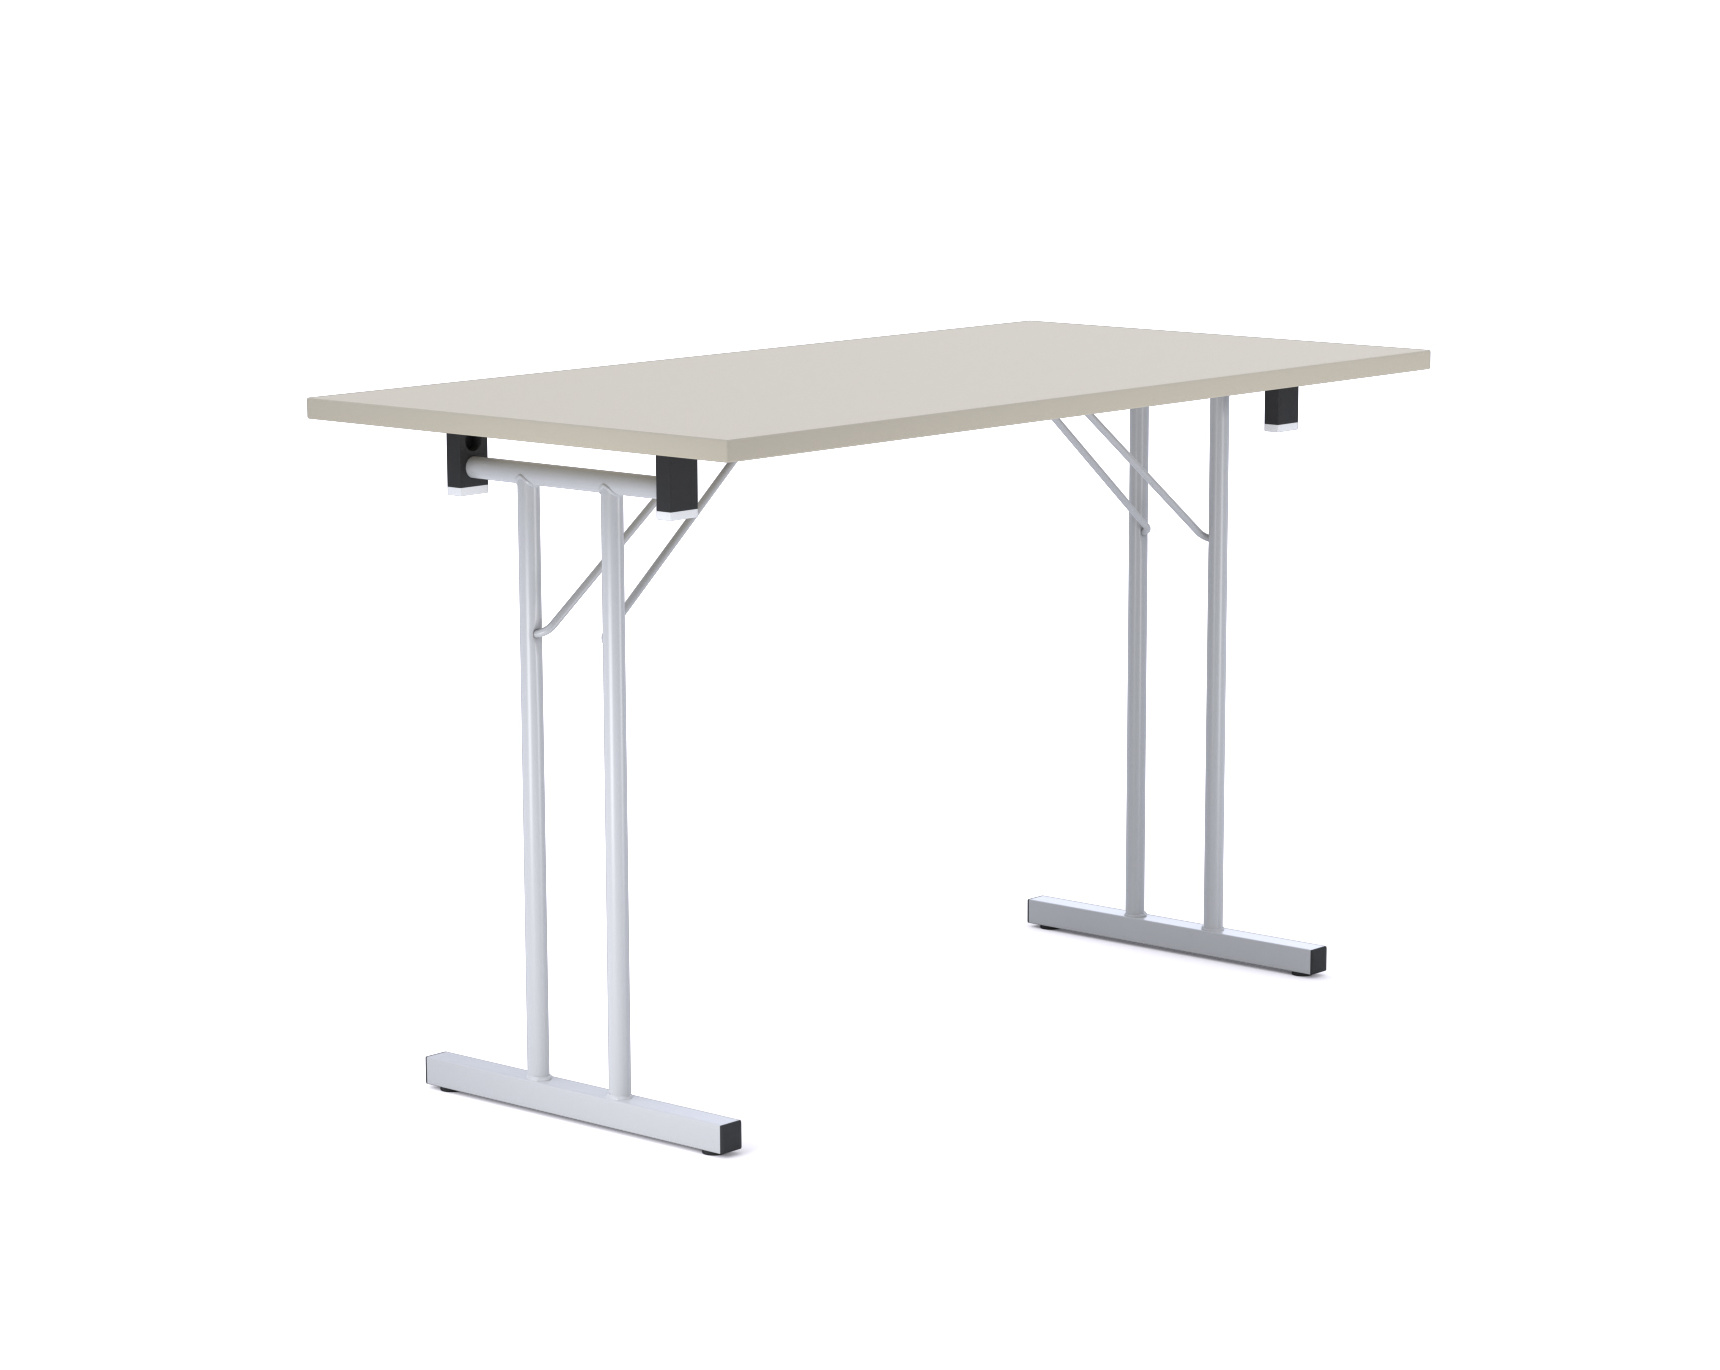 Standard Folding Table 4680-54 Konferenztisch, 120 x 60 cm